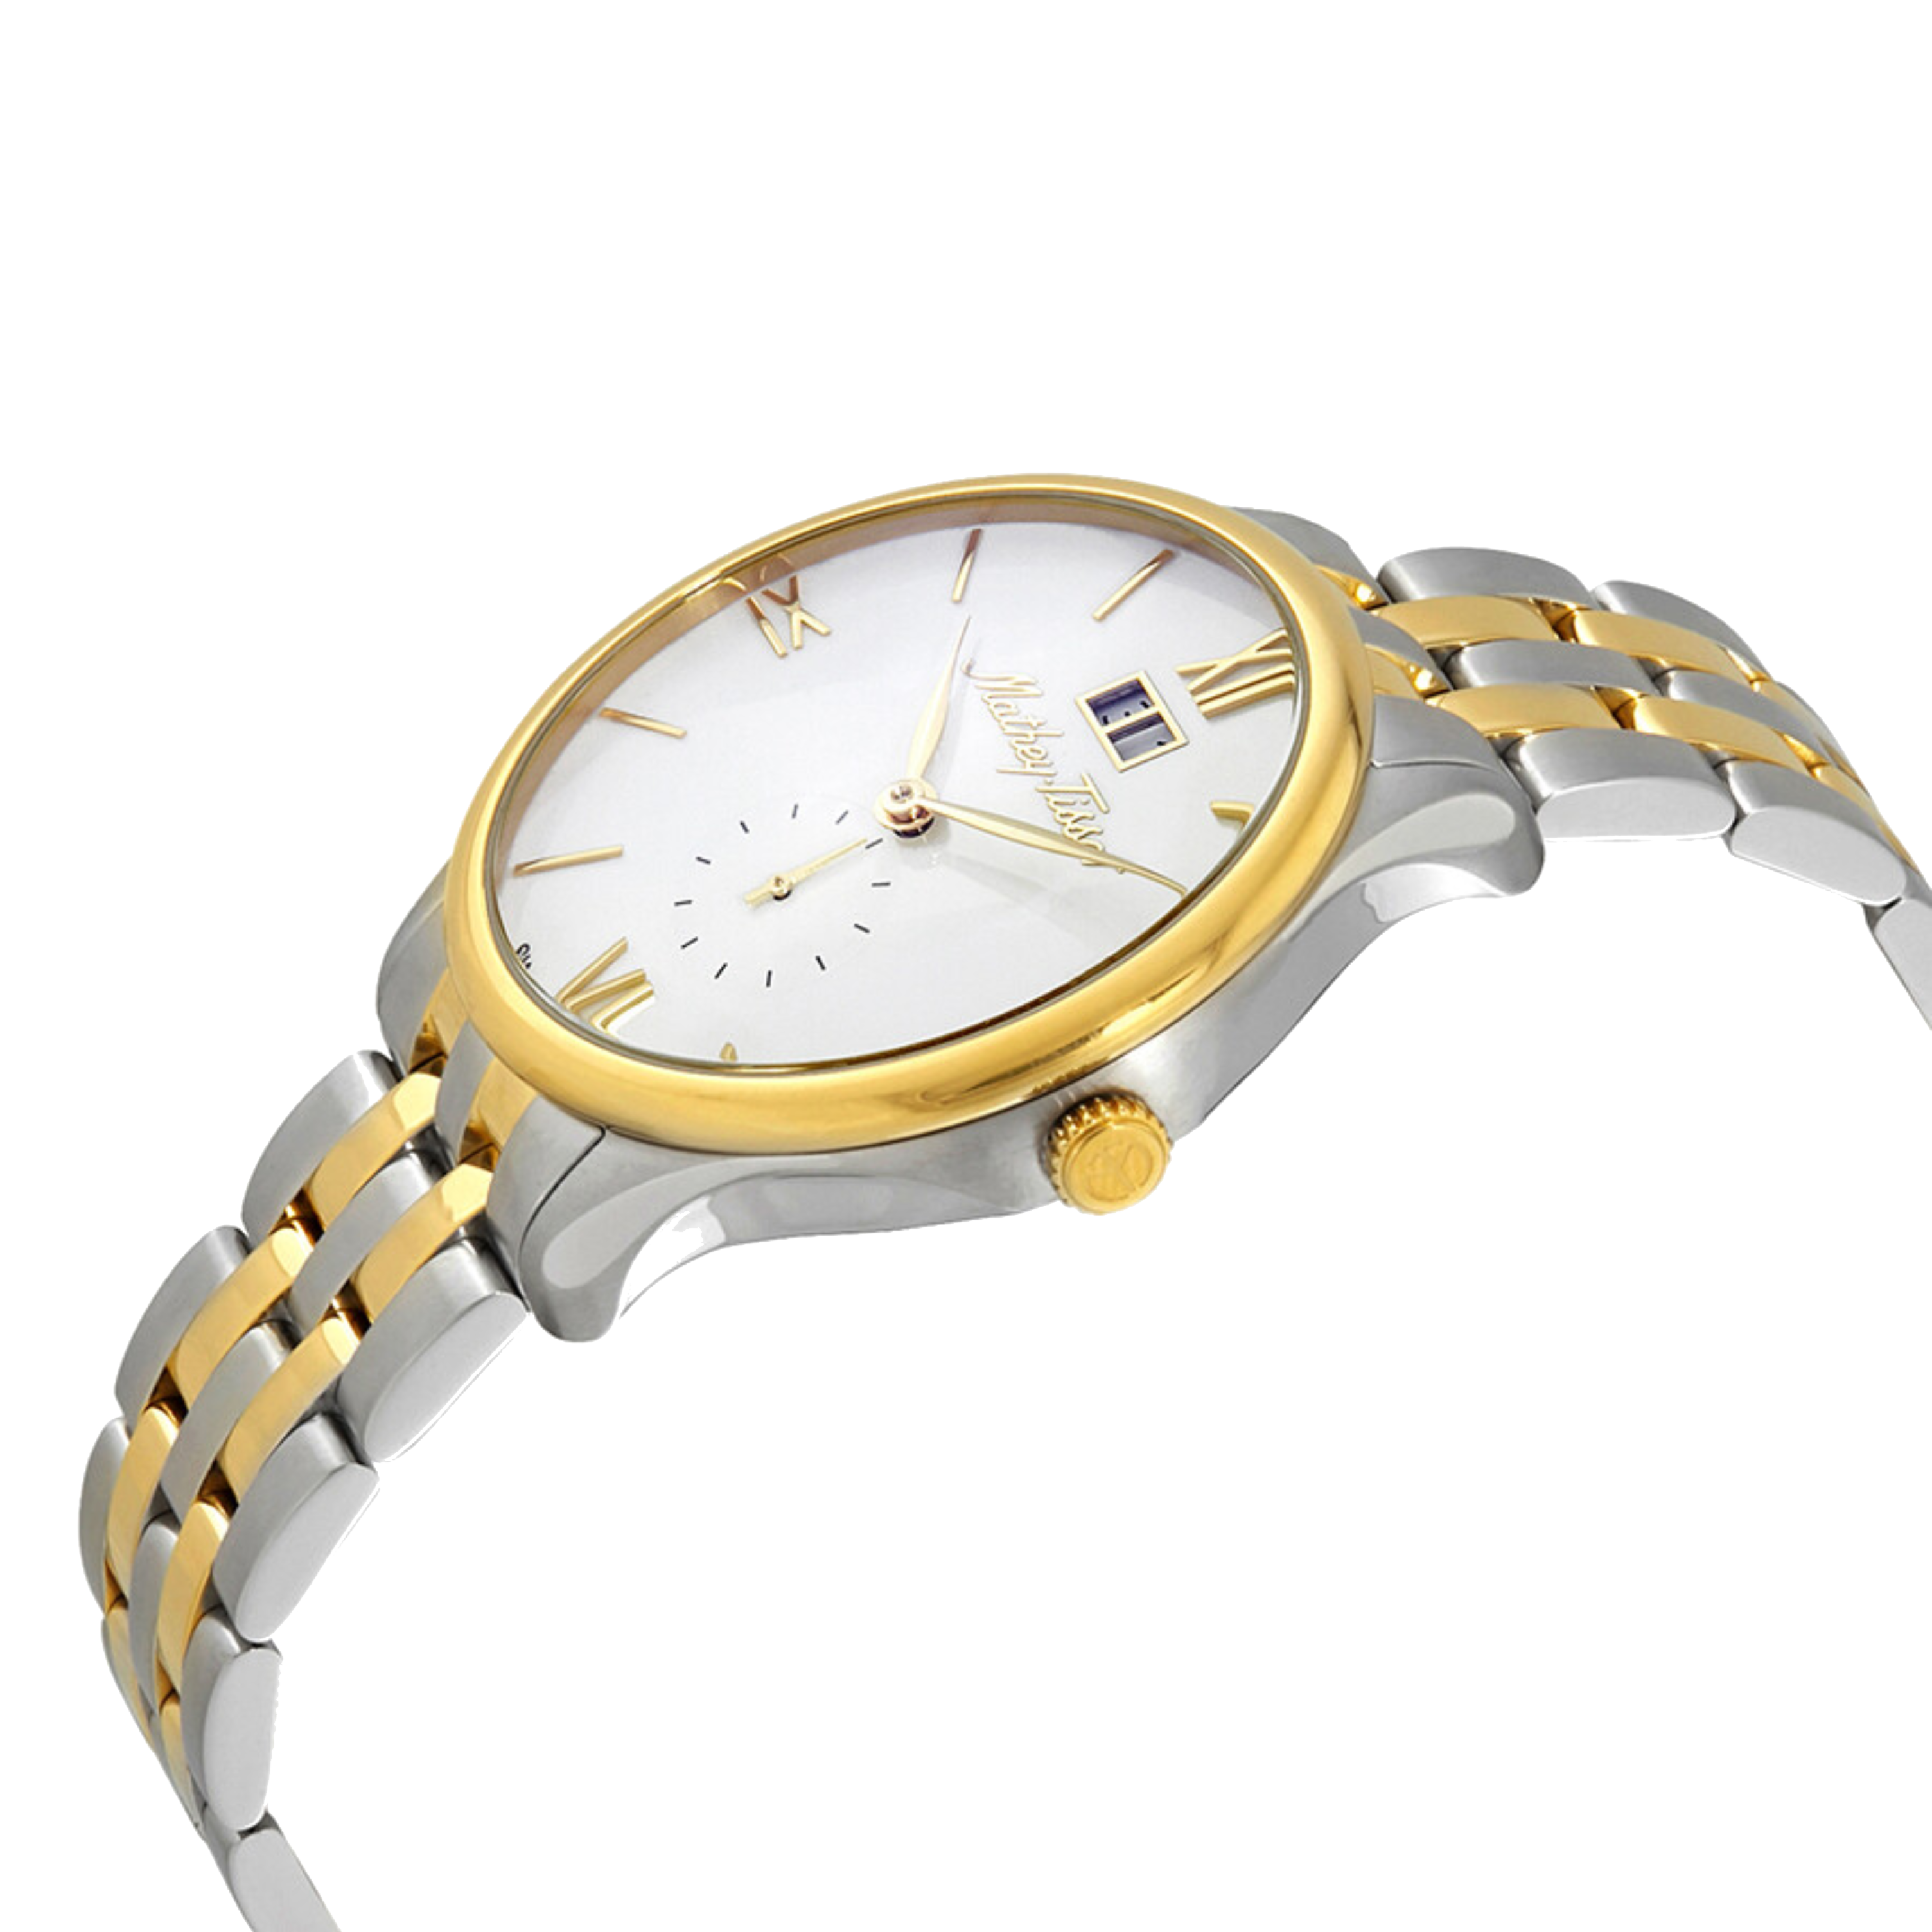 שעון יד לגבר Mathey Tissot H1886MBI 42mm צבע כסף/זהב/זכוכית ספיר - אחריות לשנתיים